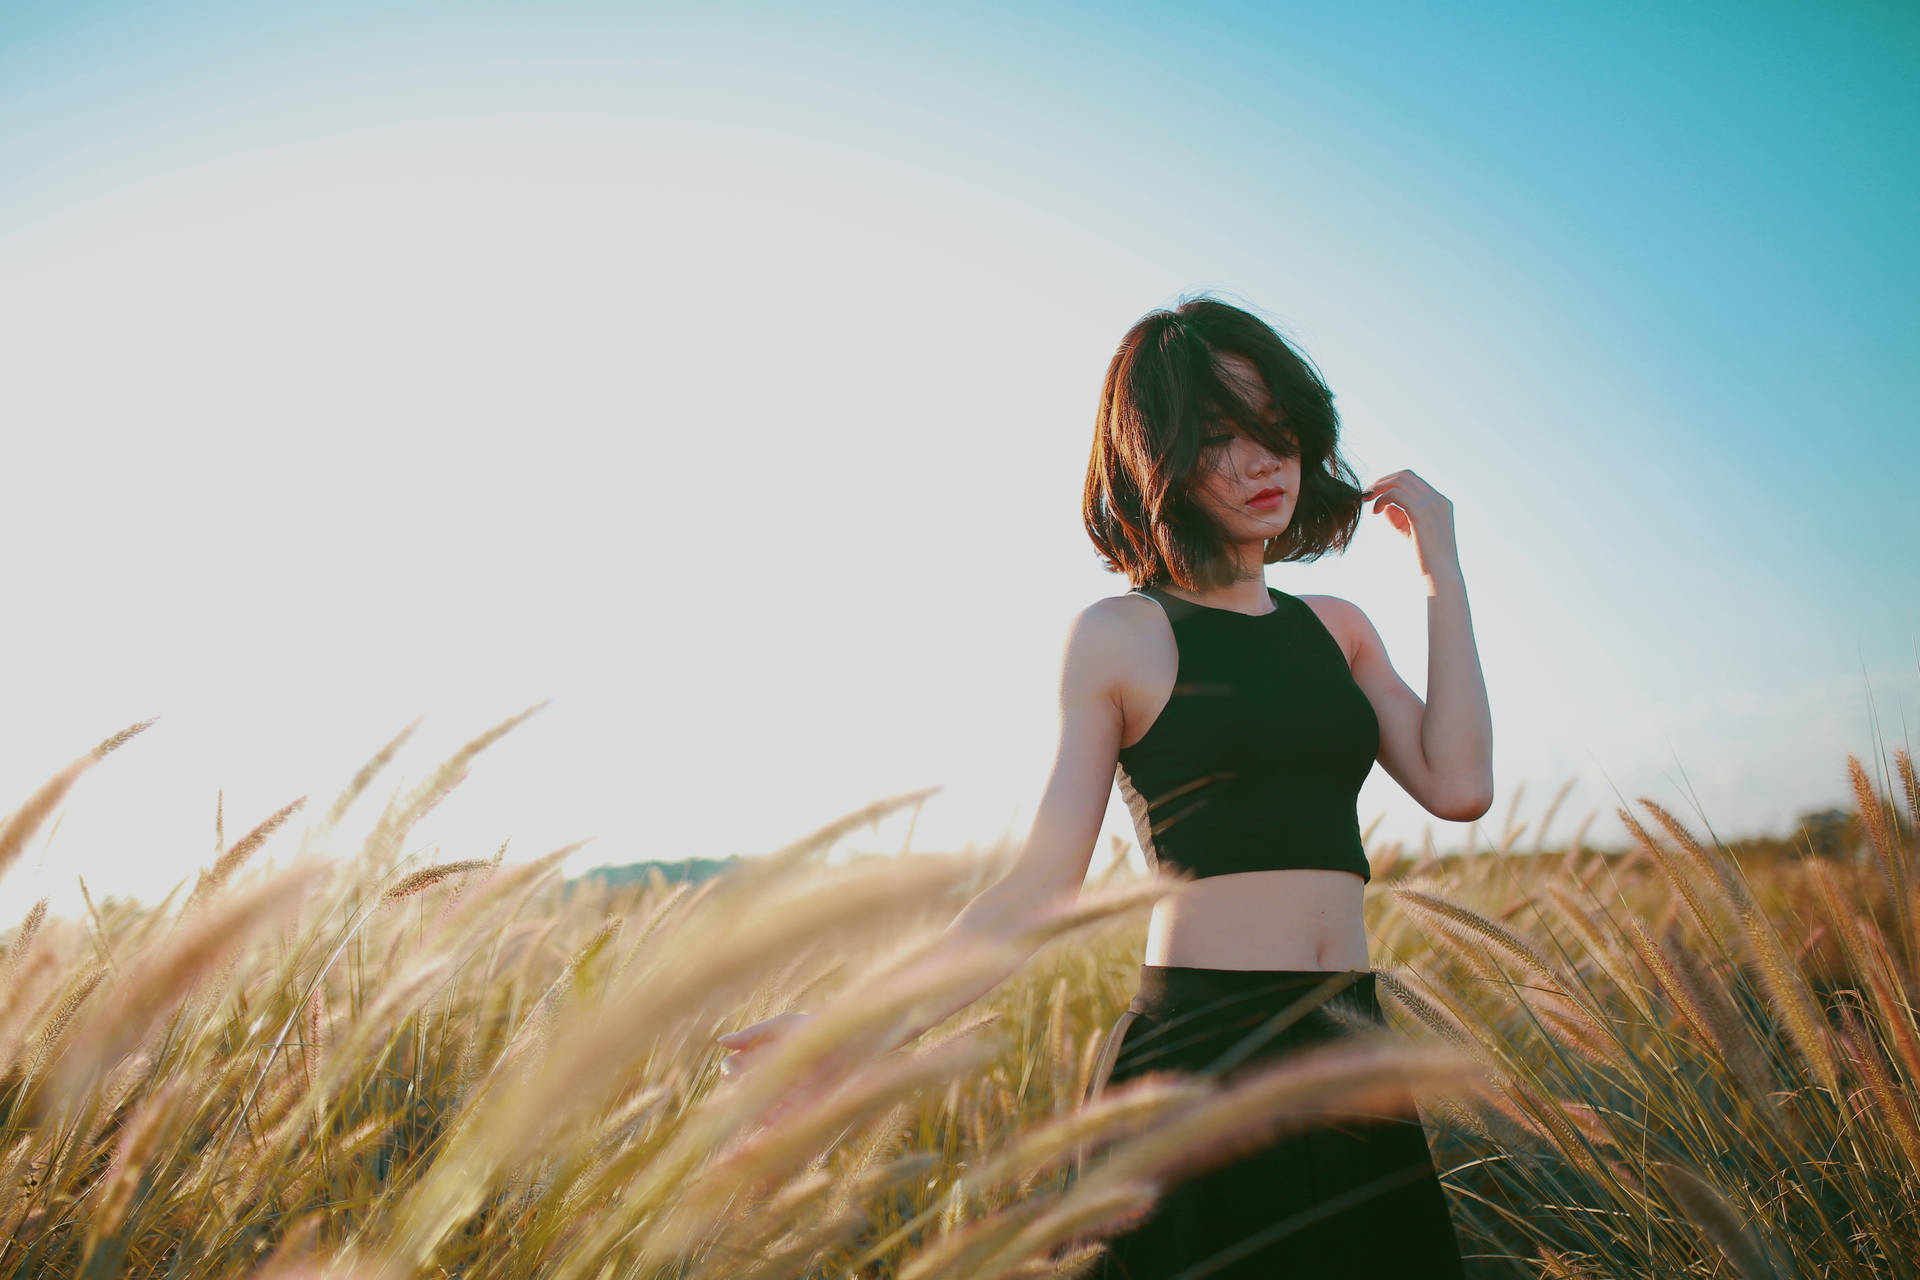 A lonely girl walking in a sunlit field Wallpaper